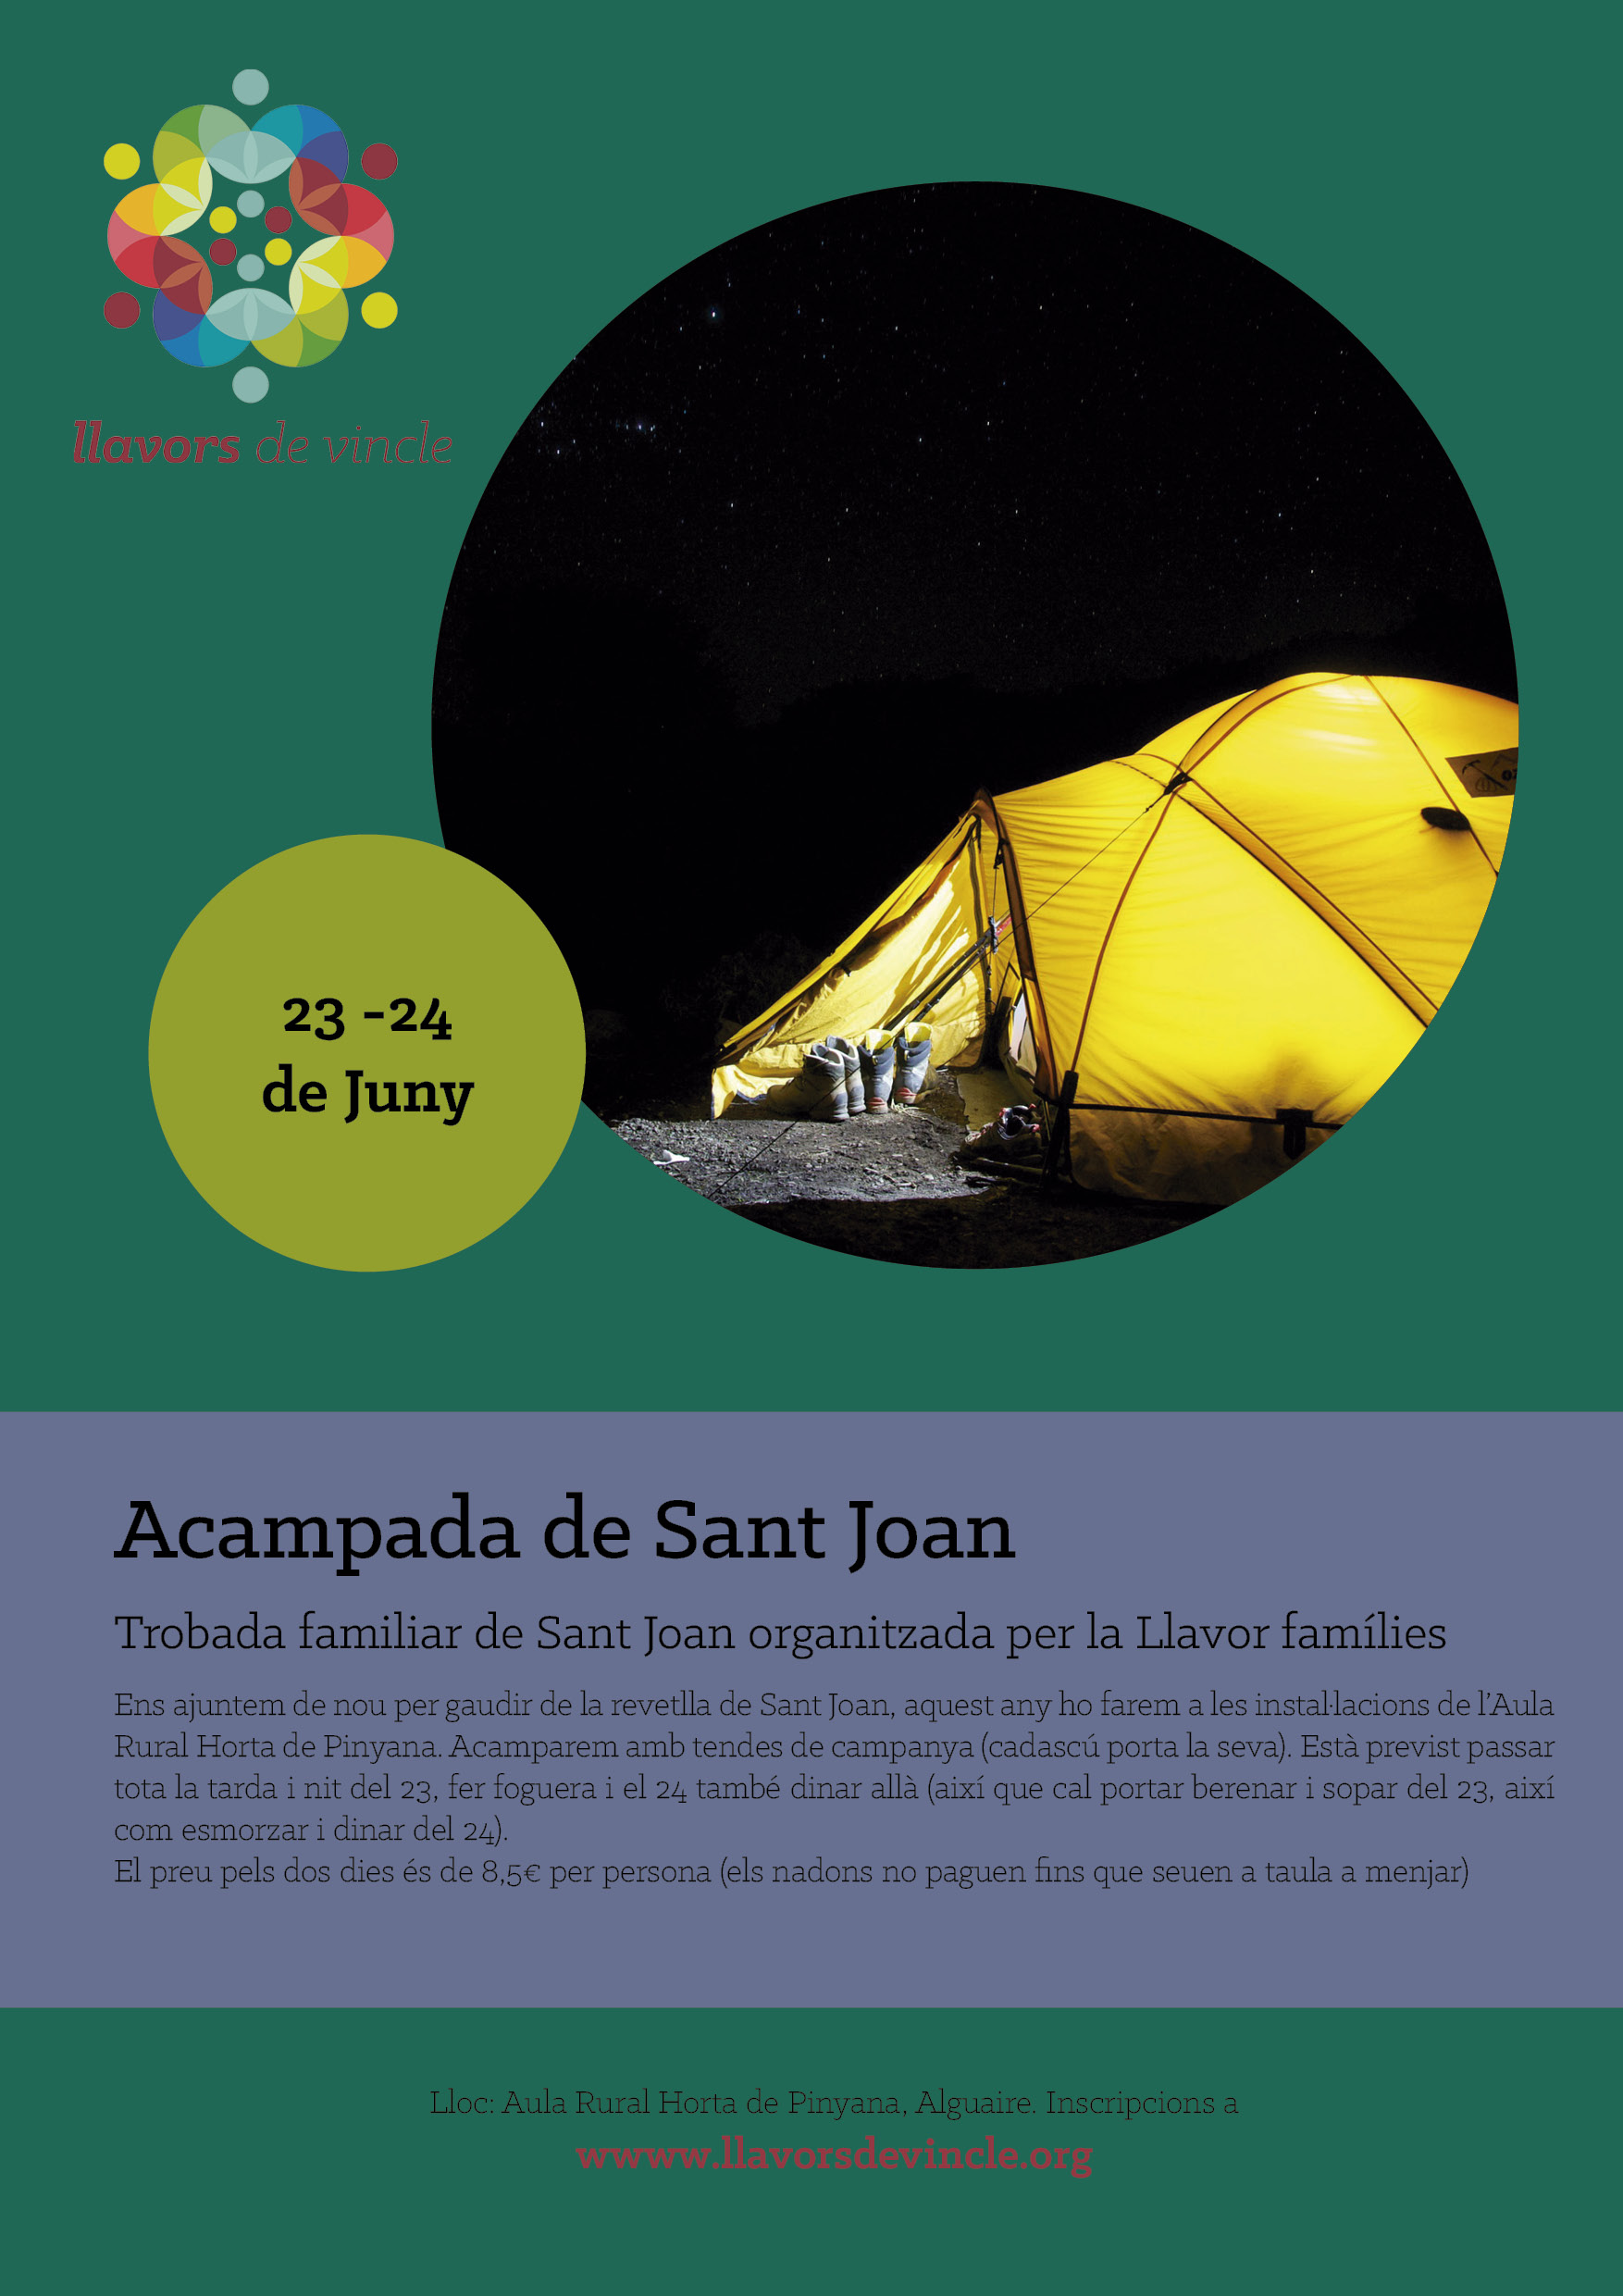 Acampada de Sant Joan 2017